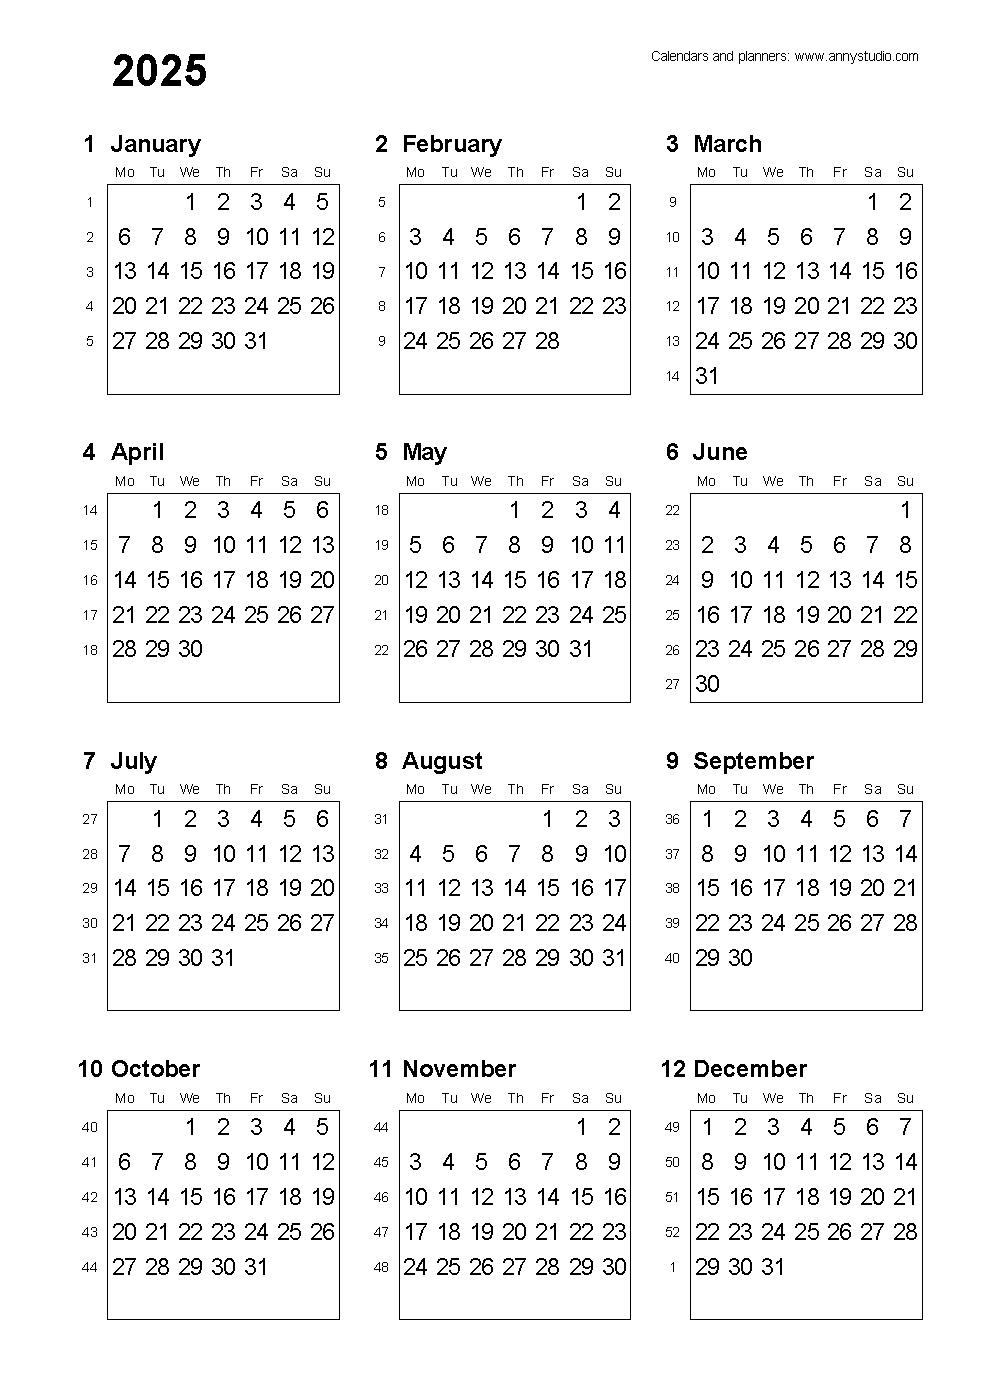 Iso Calendar 2025 With Week Numbers - tonya ferdinanda